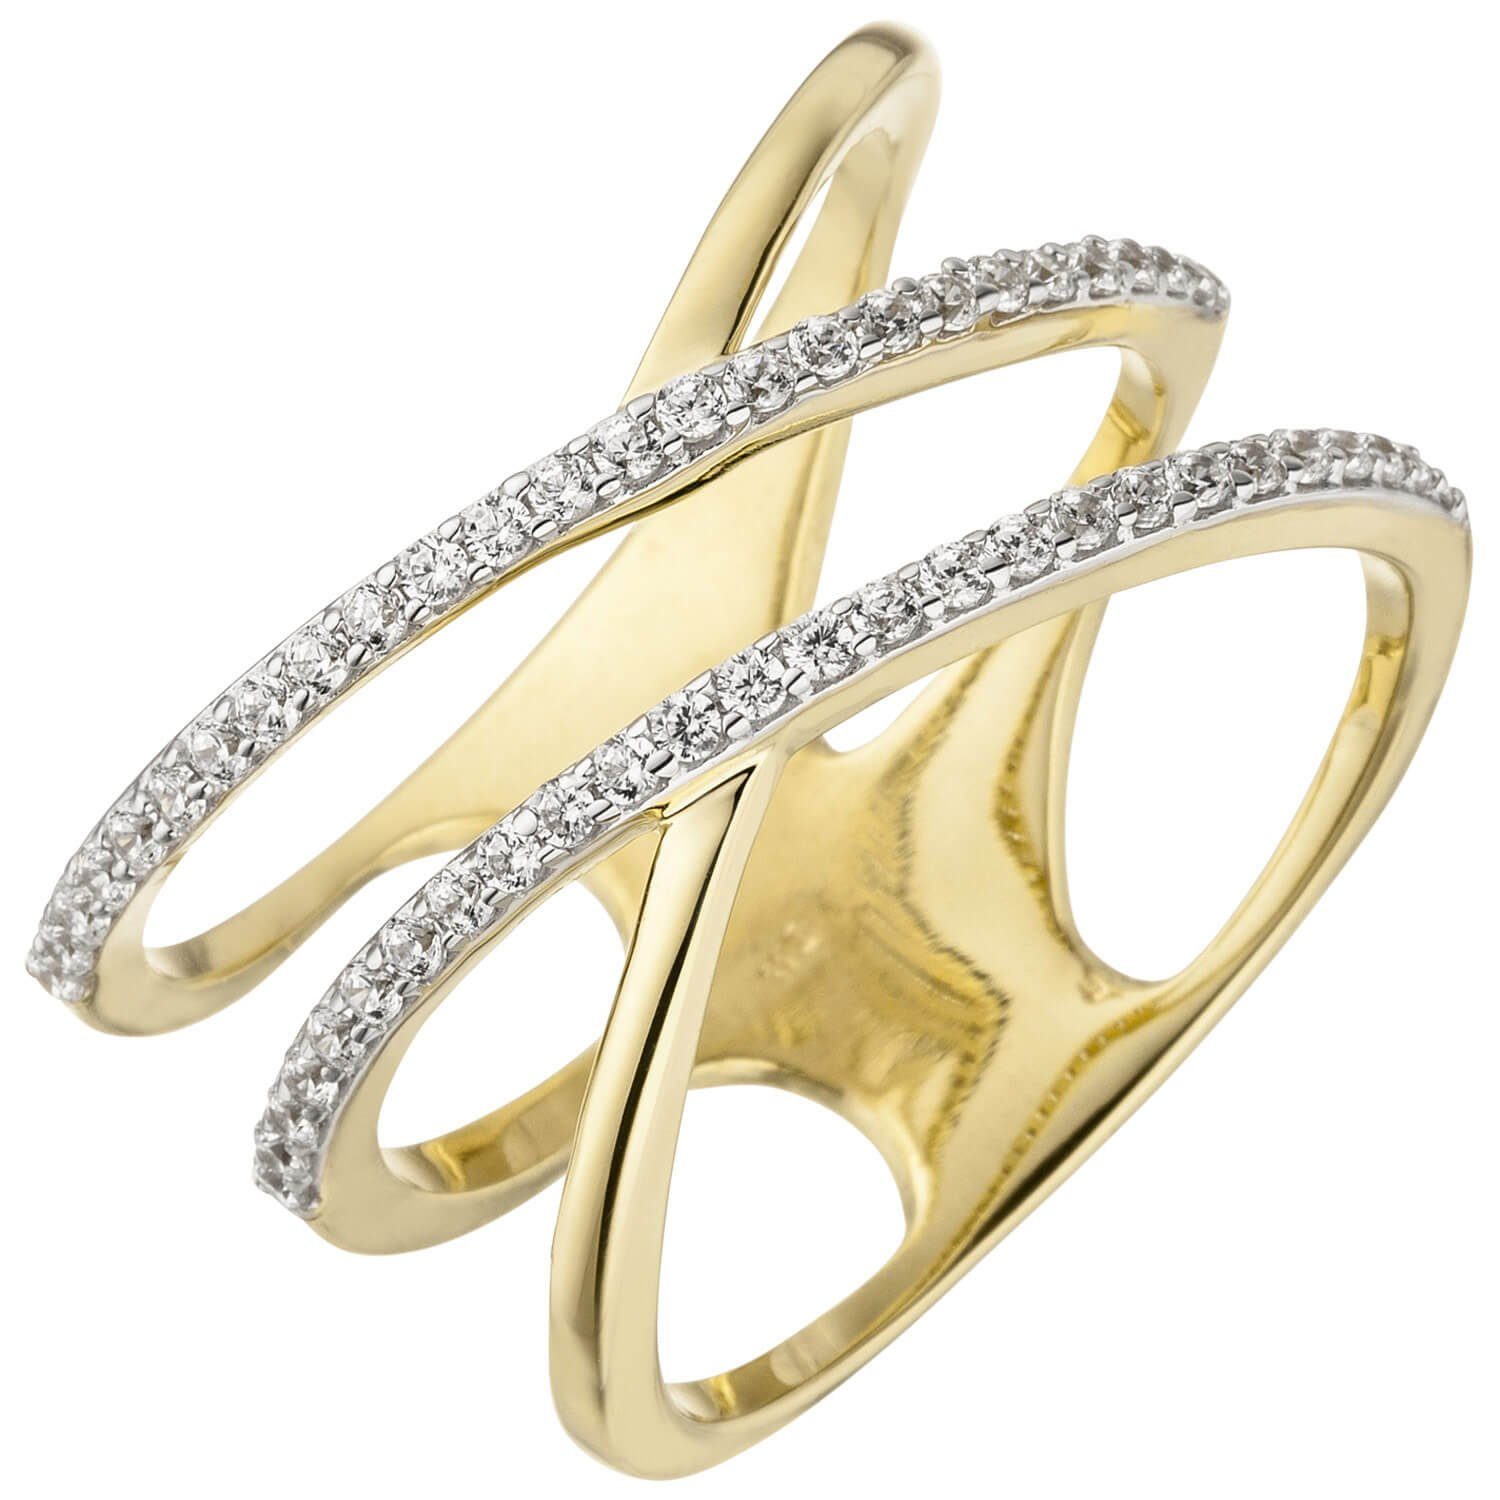 Schmuck Krone Goldring Eleganter Ring mit Zirkonia 3-reihig 375 Gelbgold, Gold 375